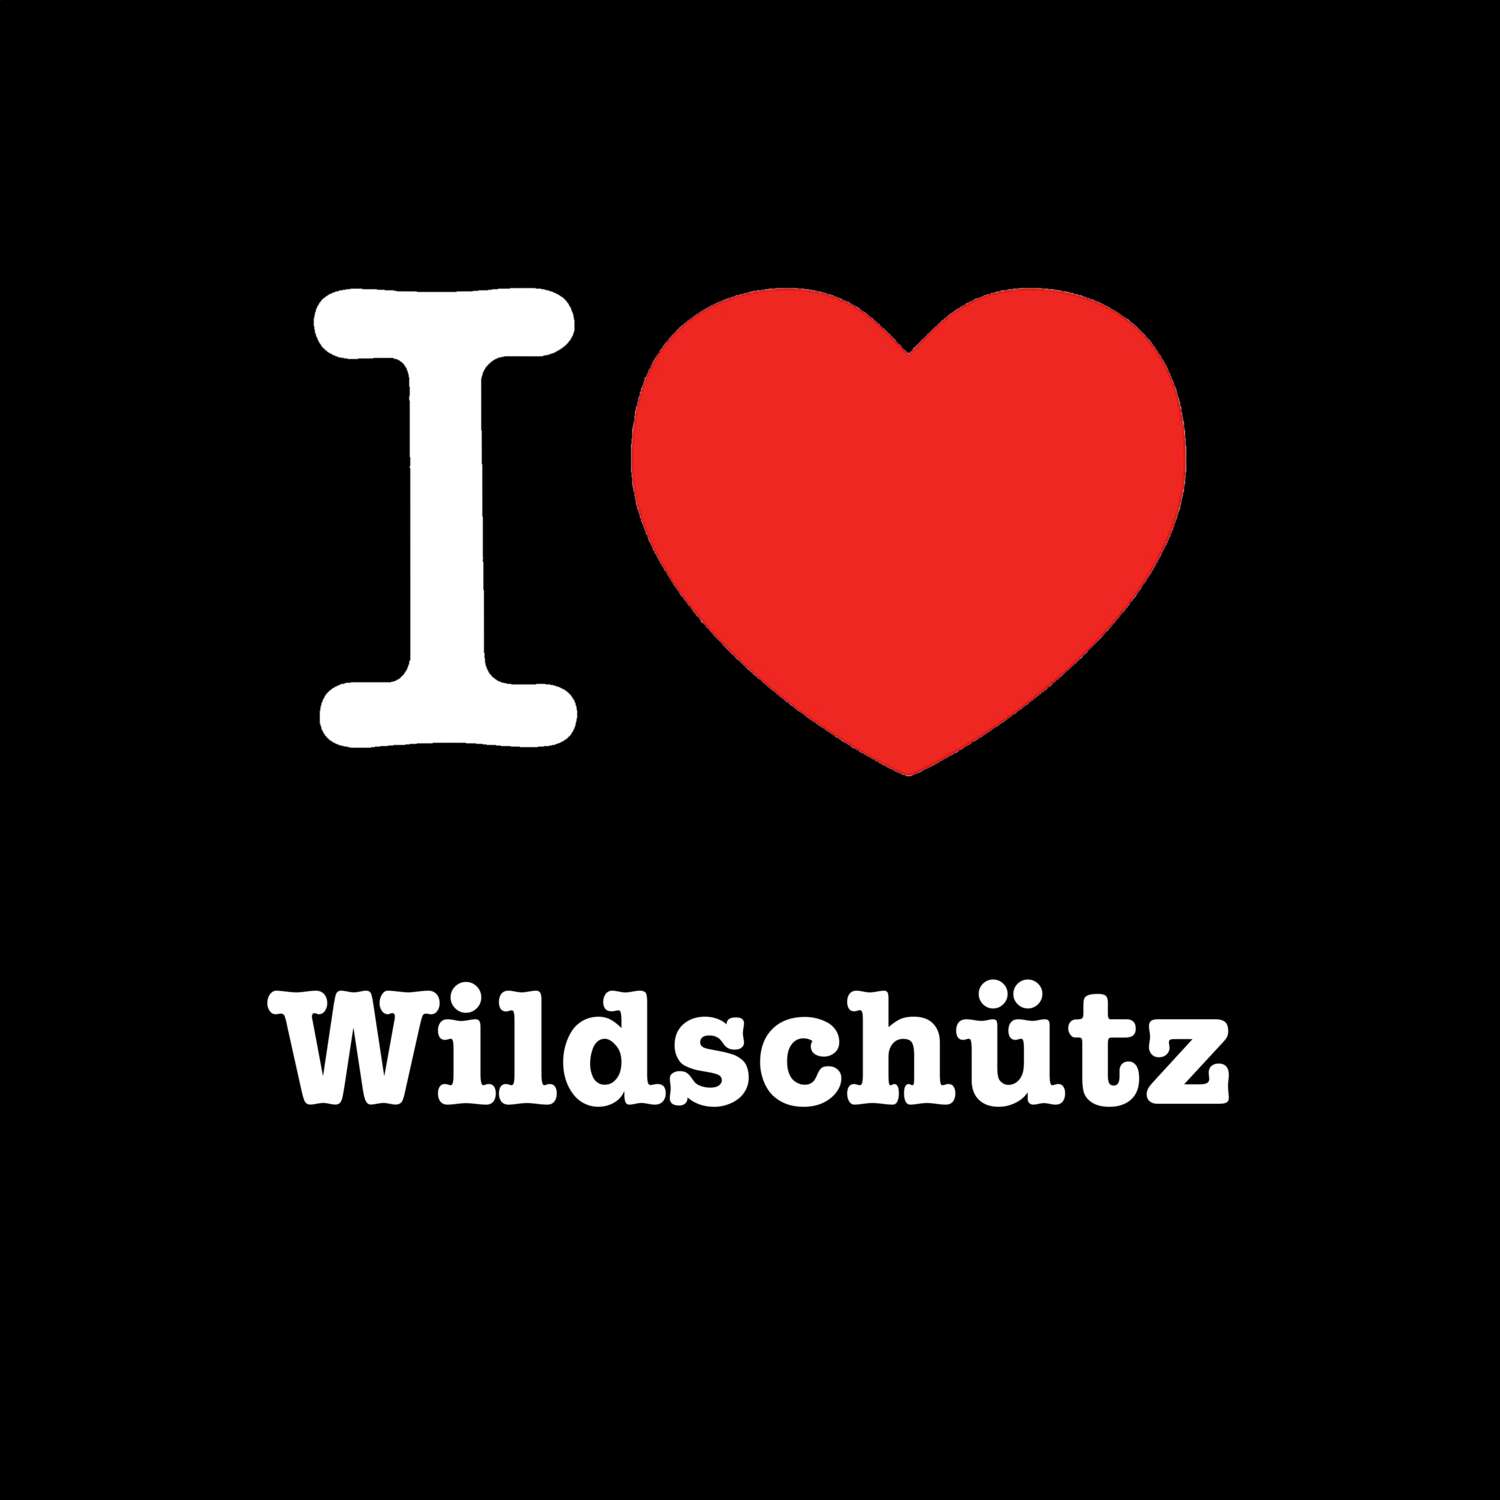 Wildschütz T-Shirt »I love«